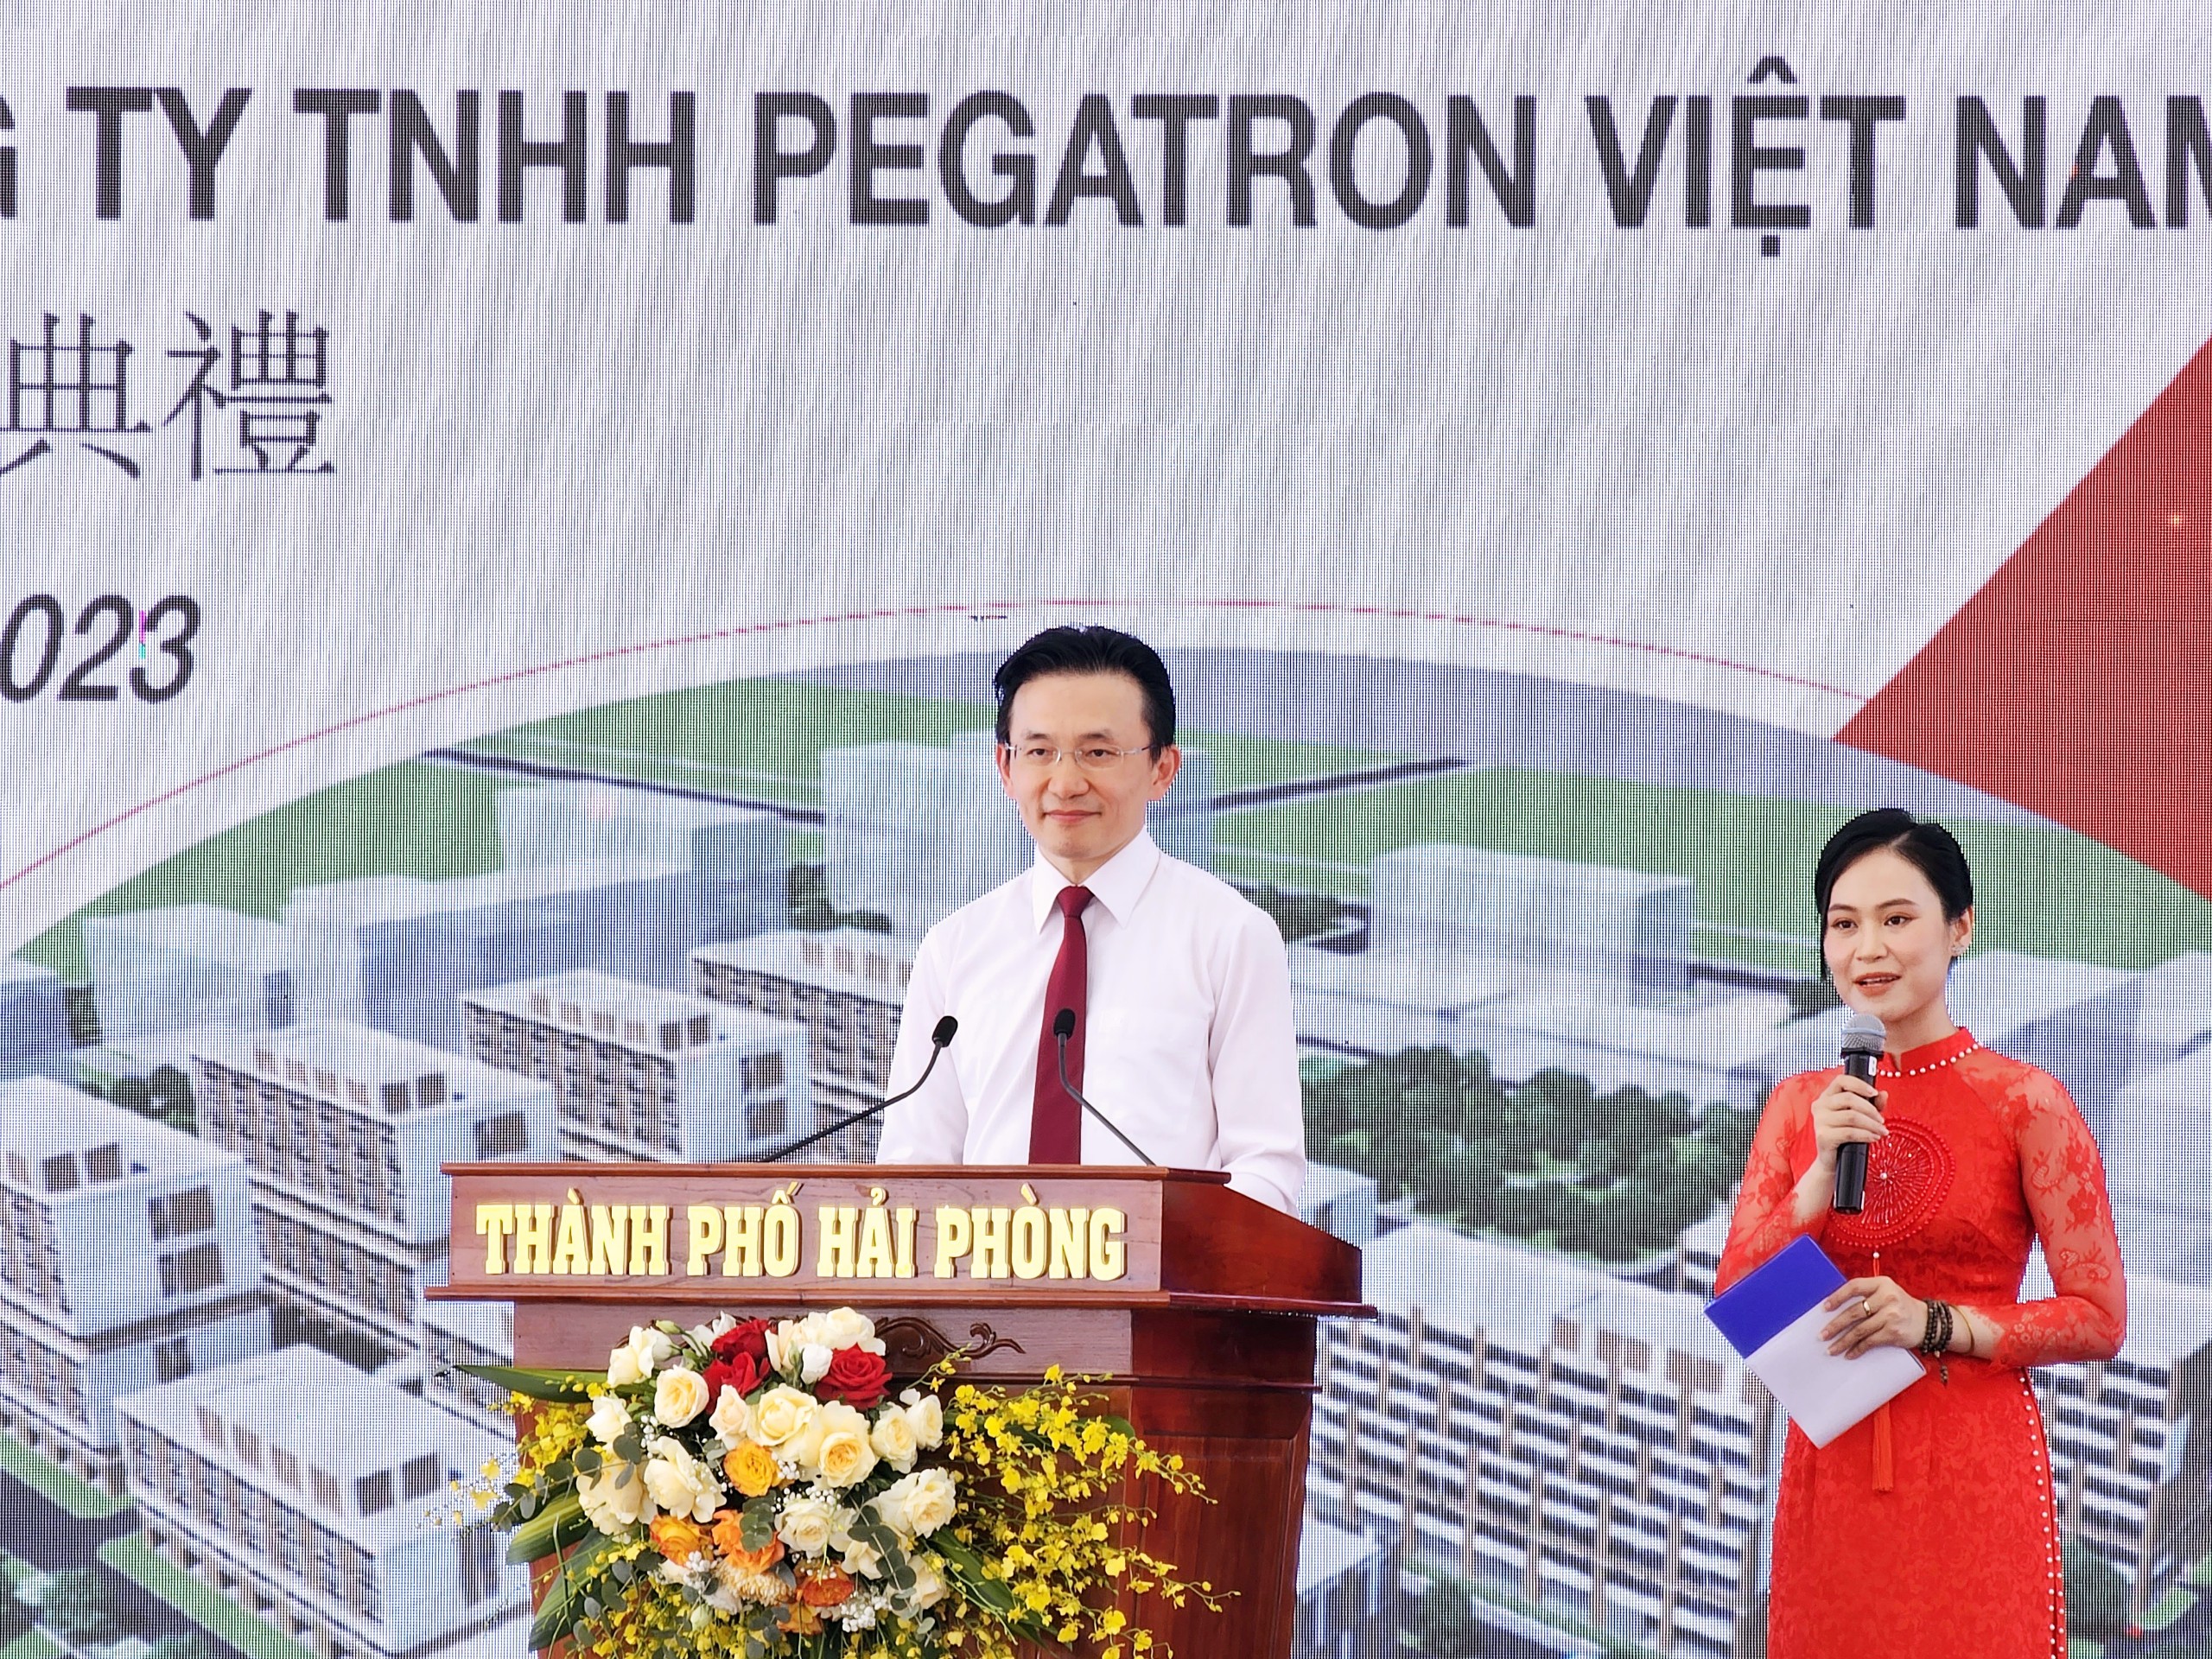 Ông Chen Chi Liang, Tổng giám đốc Công ty TNHH Pegatron Việt Nam. Ảnh: Thanh Sơn